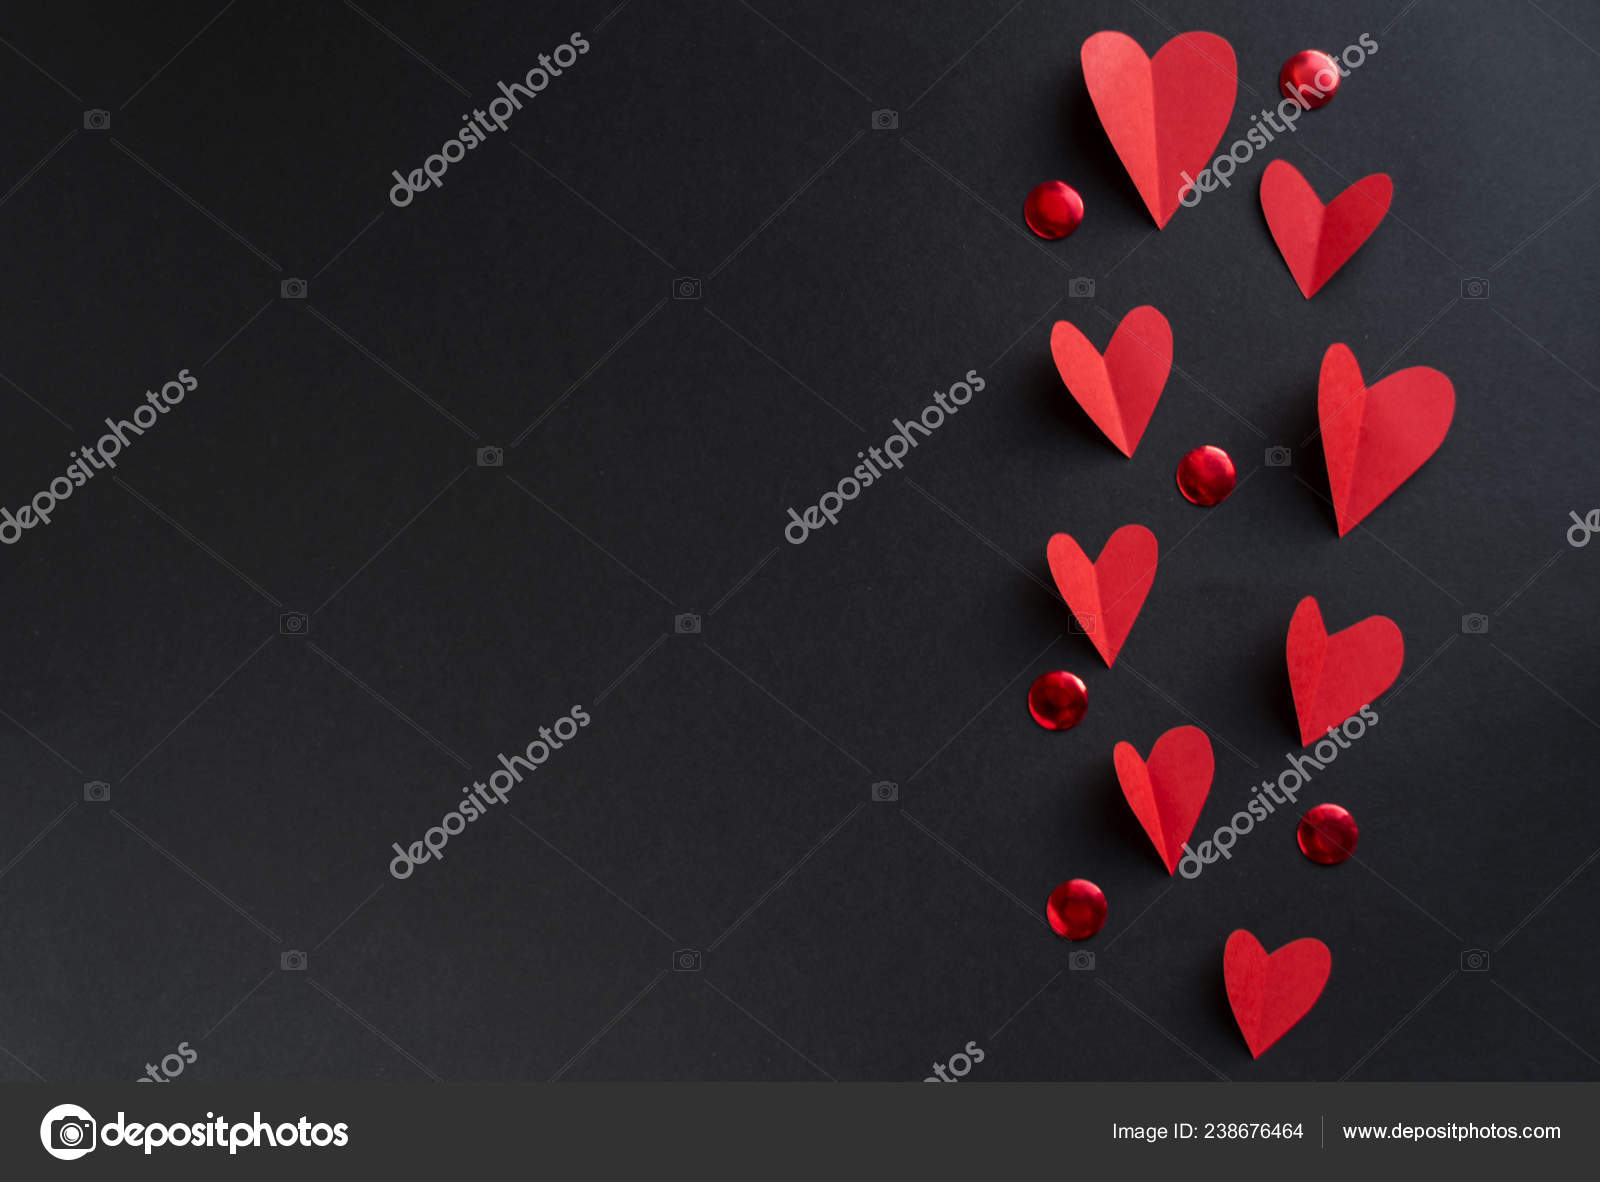 Hình nền đen với nhiều trái tim đỏ - một mẫu nền đầy nghị lực và tình yêu dành cho ngày Valentine. Sự kết hợp giữa màu sắc đen và đỏ sẽ tạo nên không gian lãng mạn và đặc biệt cho ngày lễ tình nhân của bạn. Hãy cùng ngắm nhìn mẫu nền này để cảm nhận được sự độc đáo và tuyệt vời của nó.